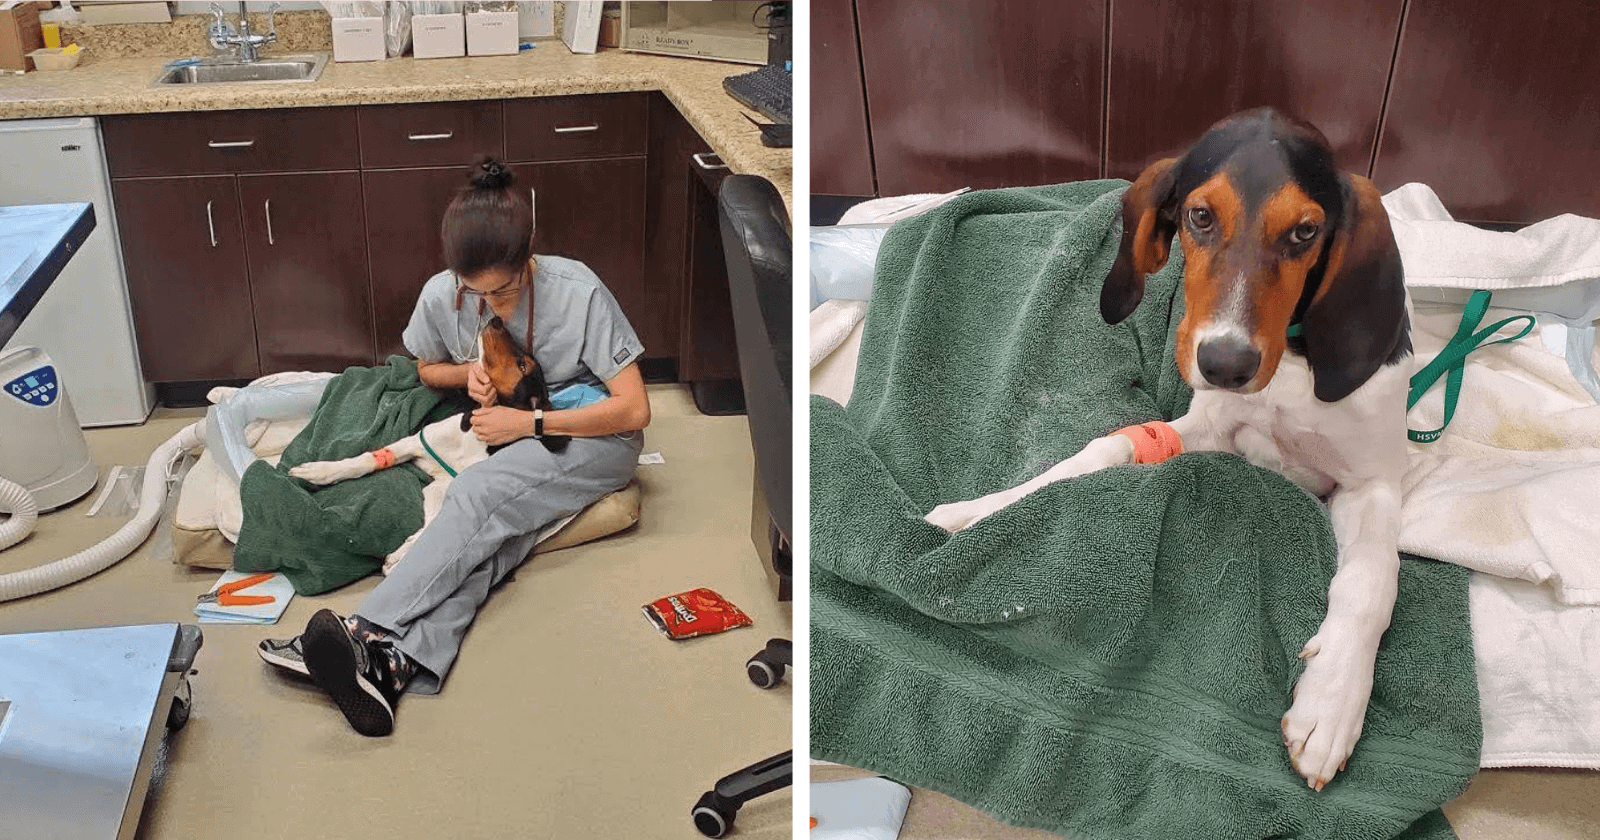 Dono decreta fim HORRENDO para cãozinho machucado, mas veterinários determinam o contrário!